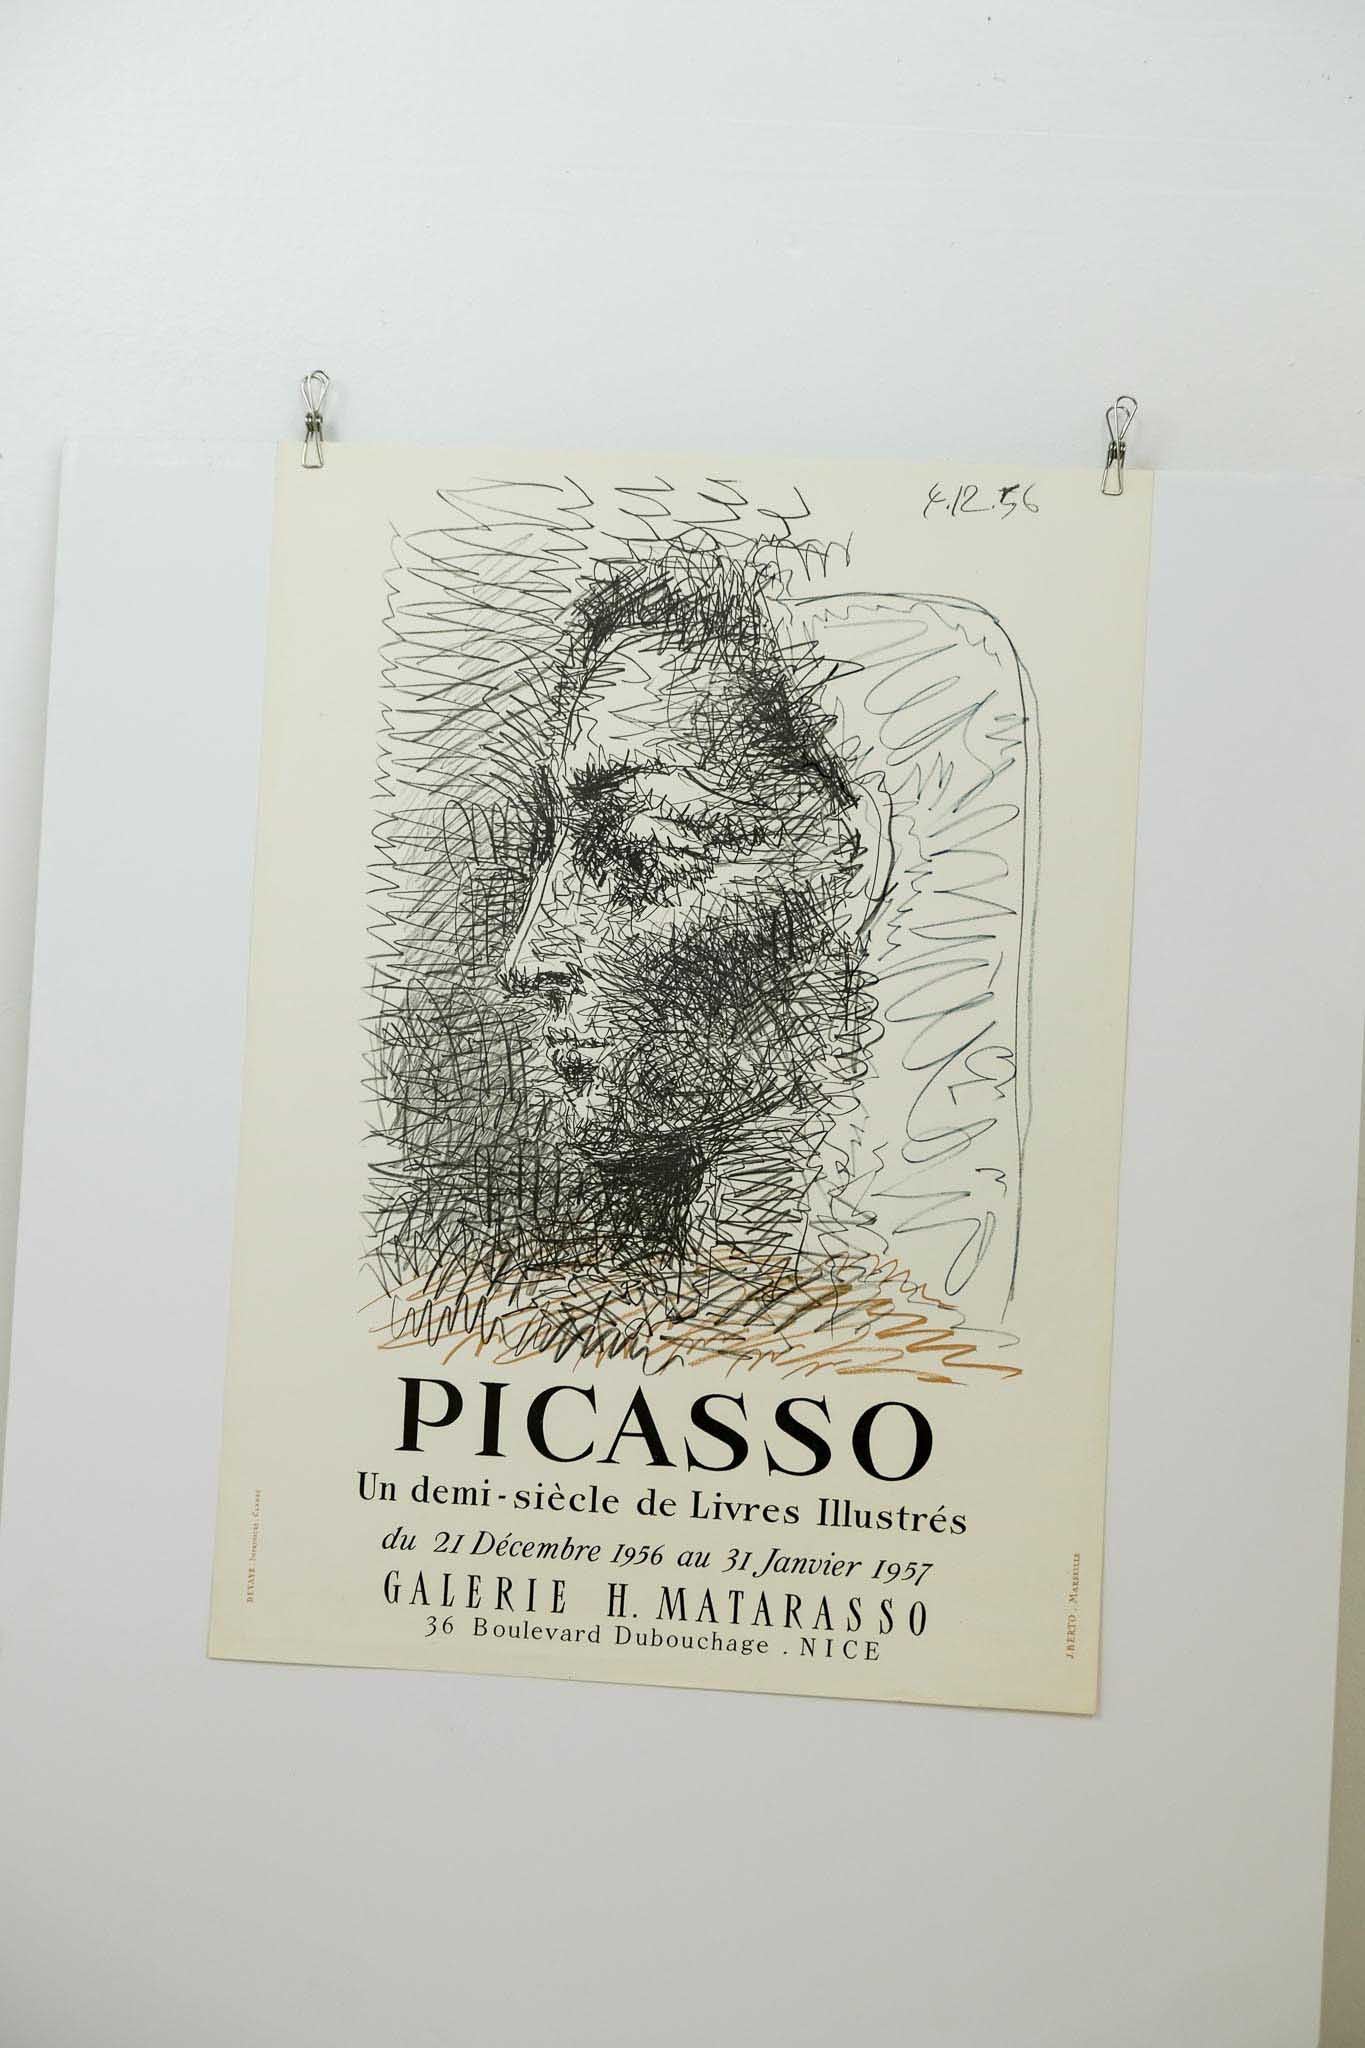 Pablo Picasso "Un demi-siecle de Livres Illustres" Lithograph Print 1957